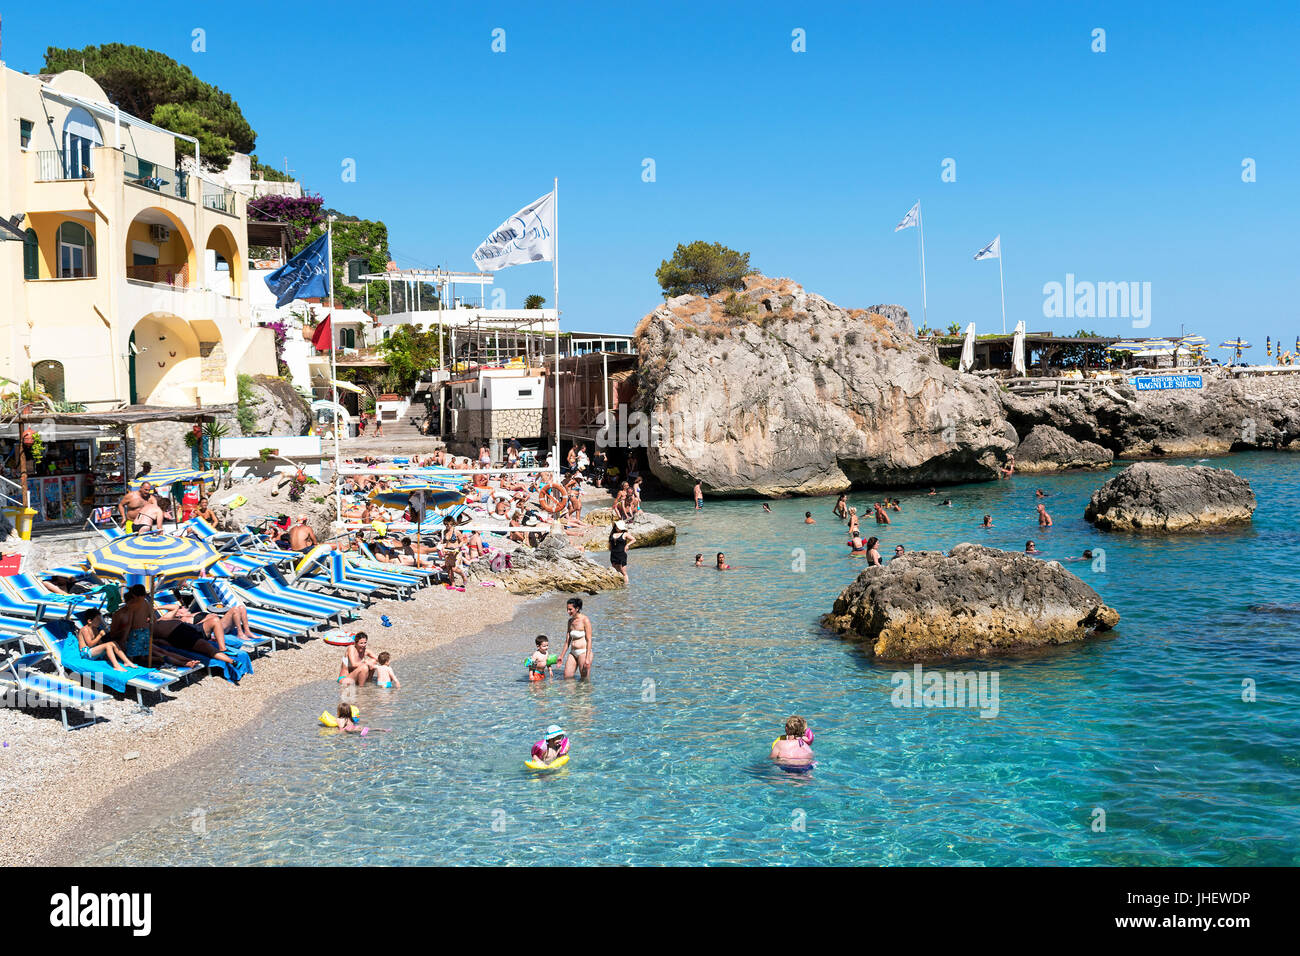 Les gens sur la plage et dans la mer à Marina Piccola, sur l'île de Capri, italie Banque D'Images